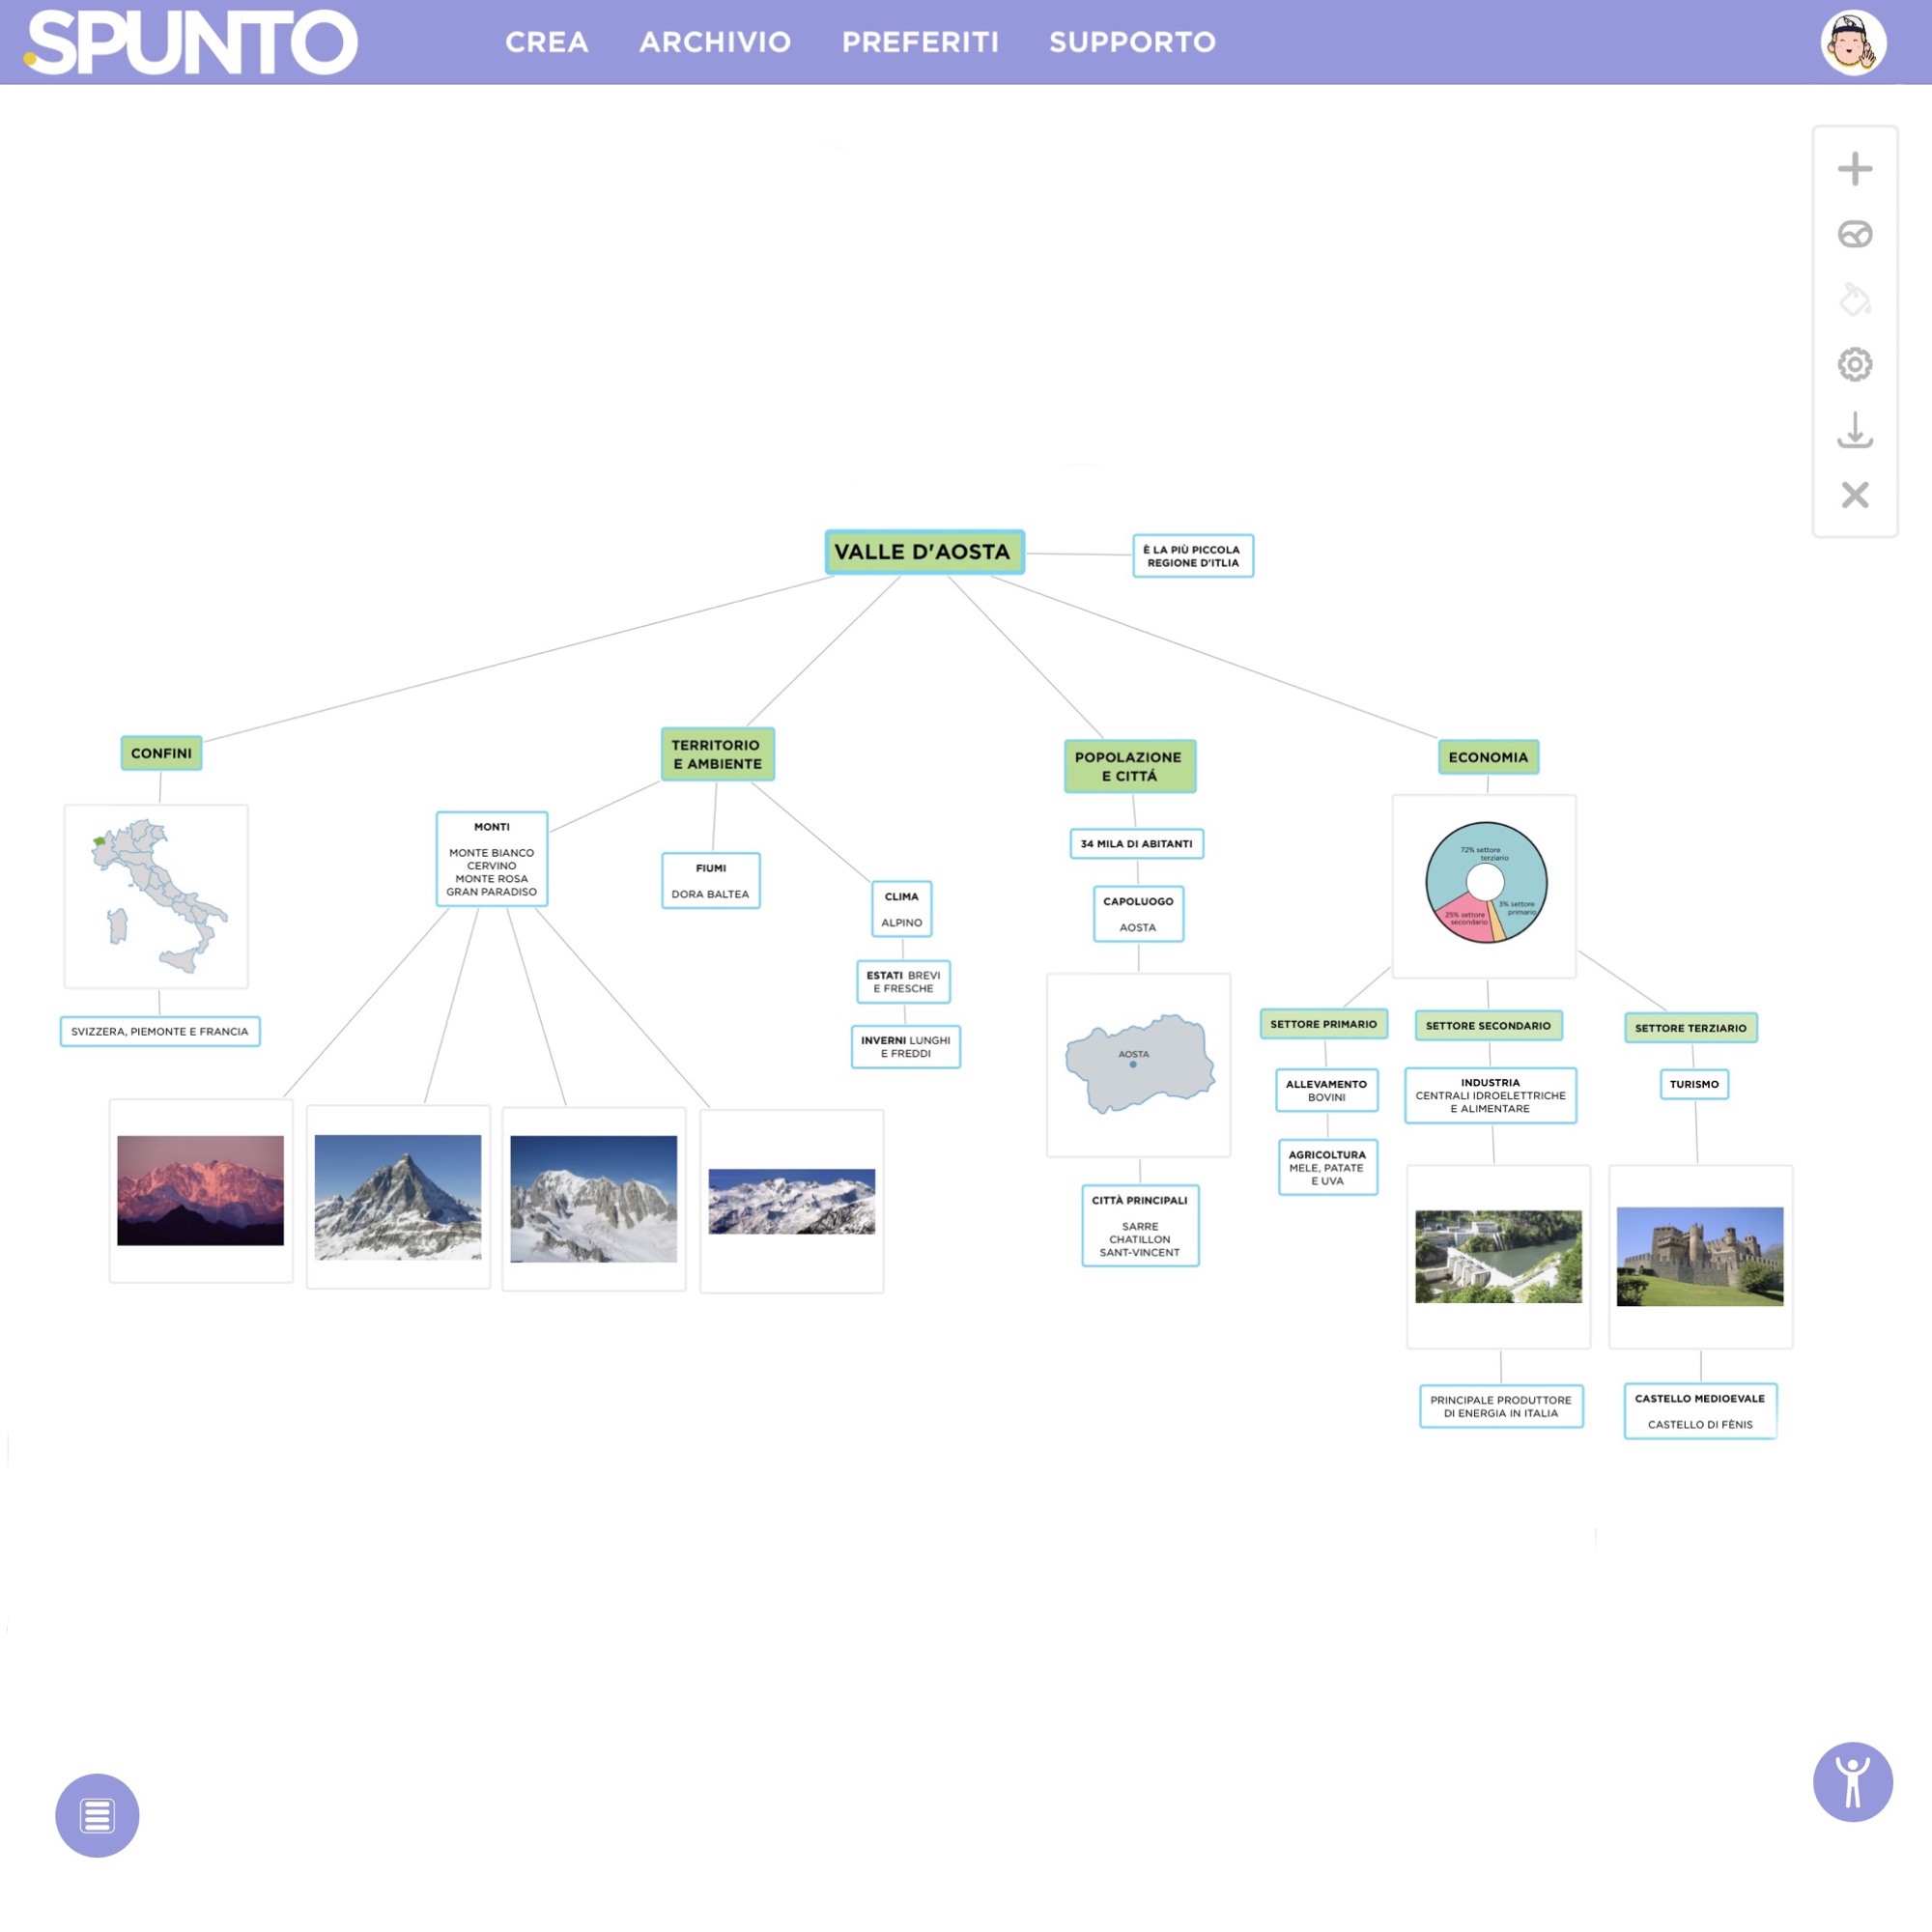 Mapp_SpuntoEducation